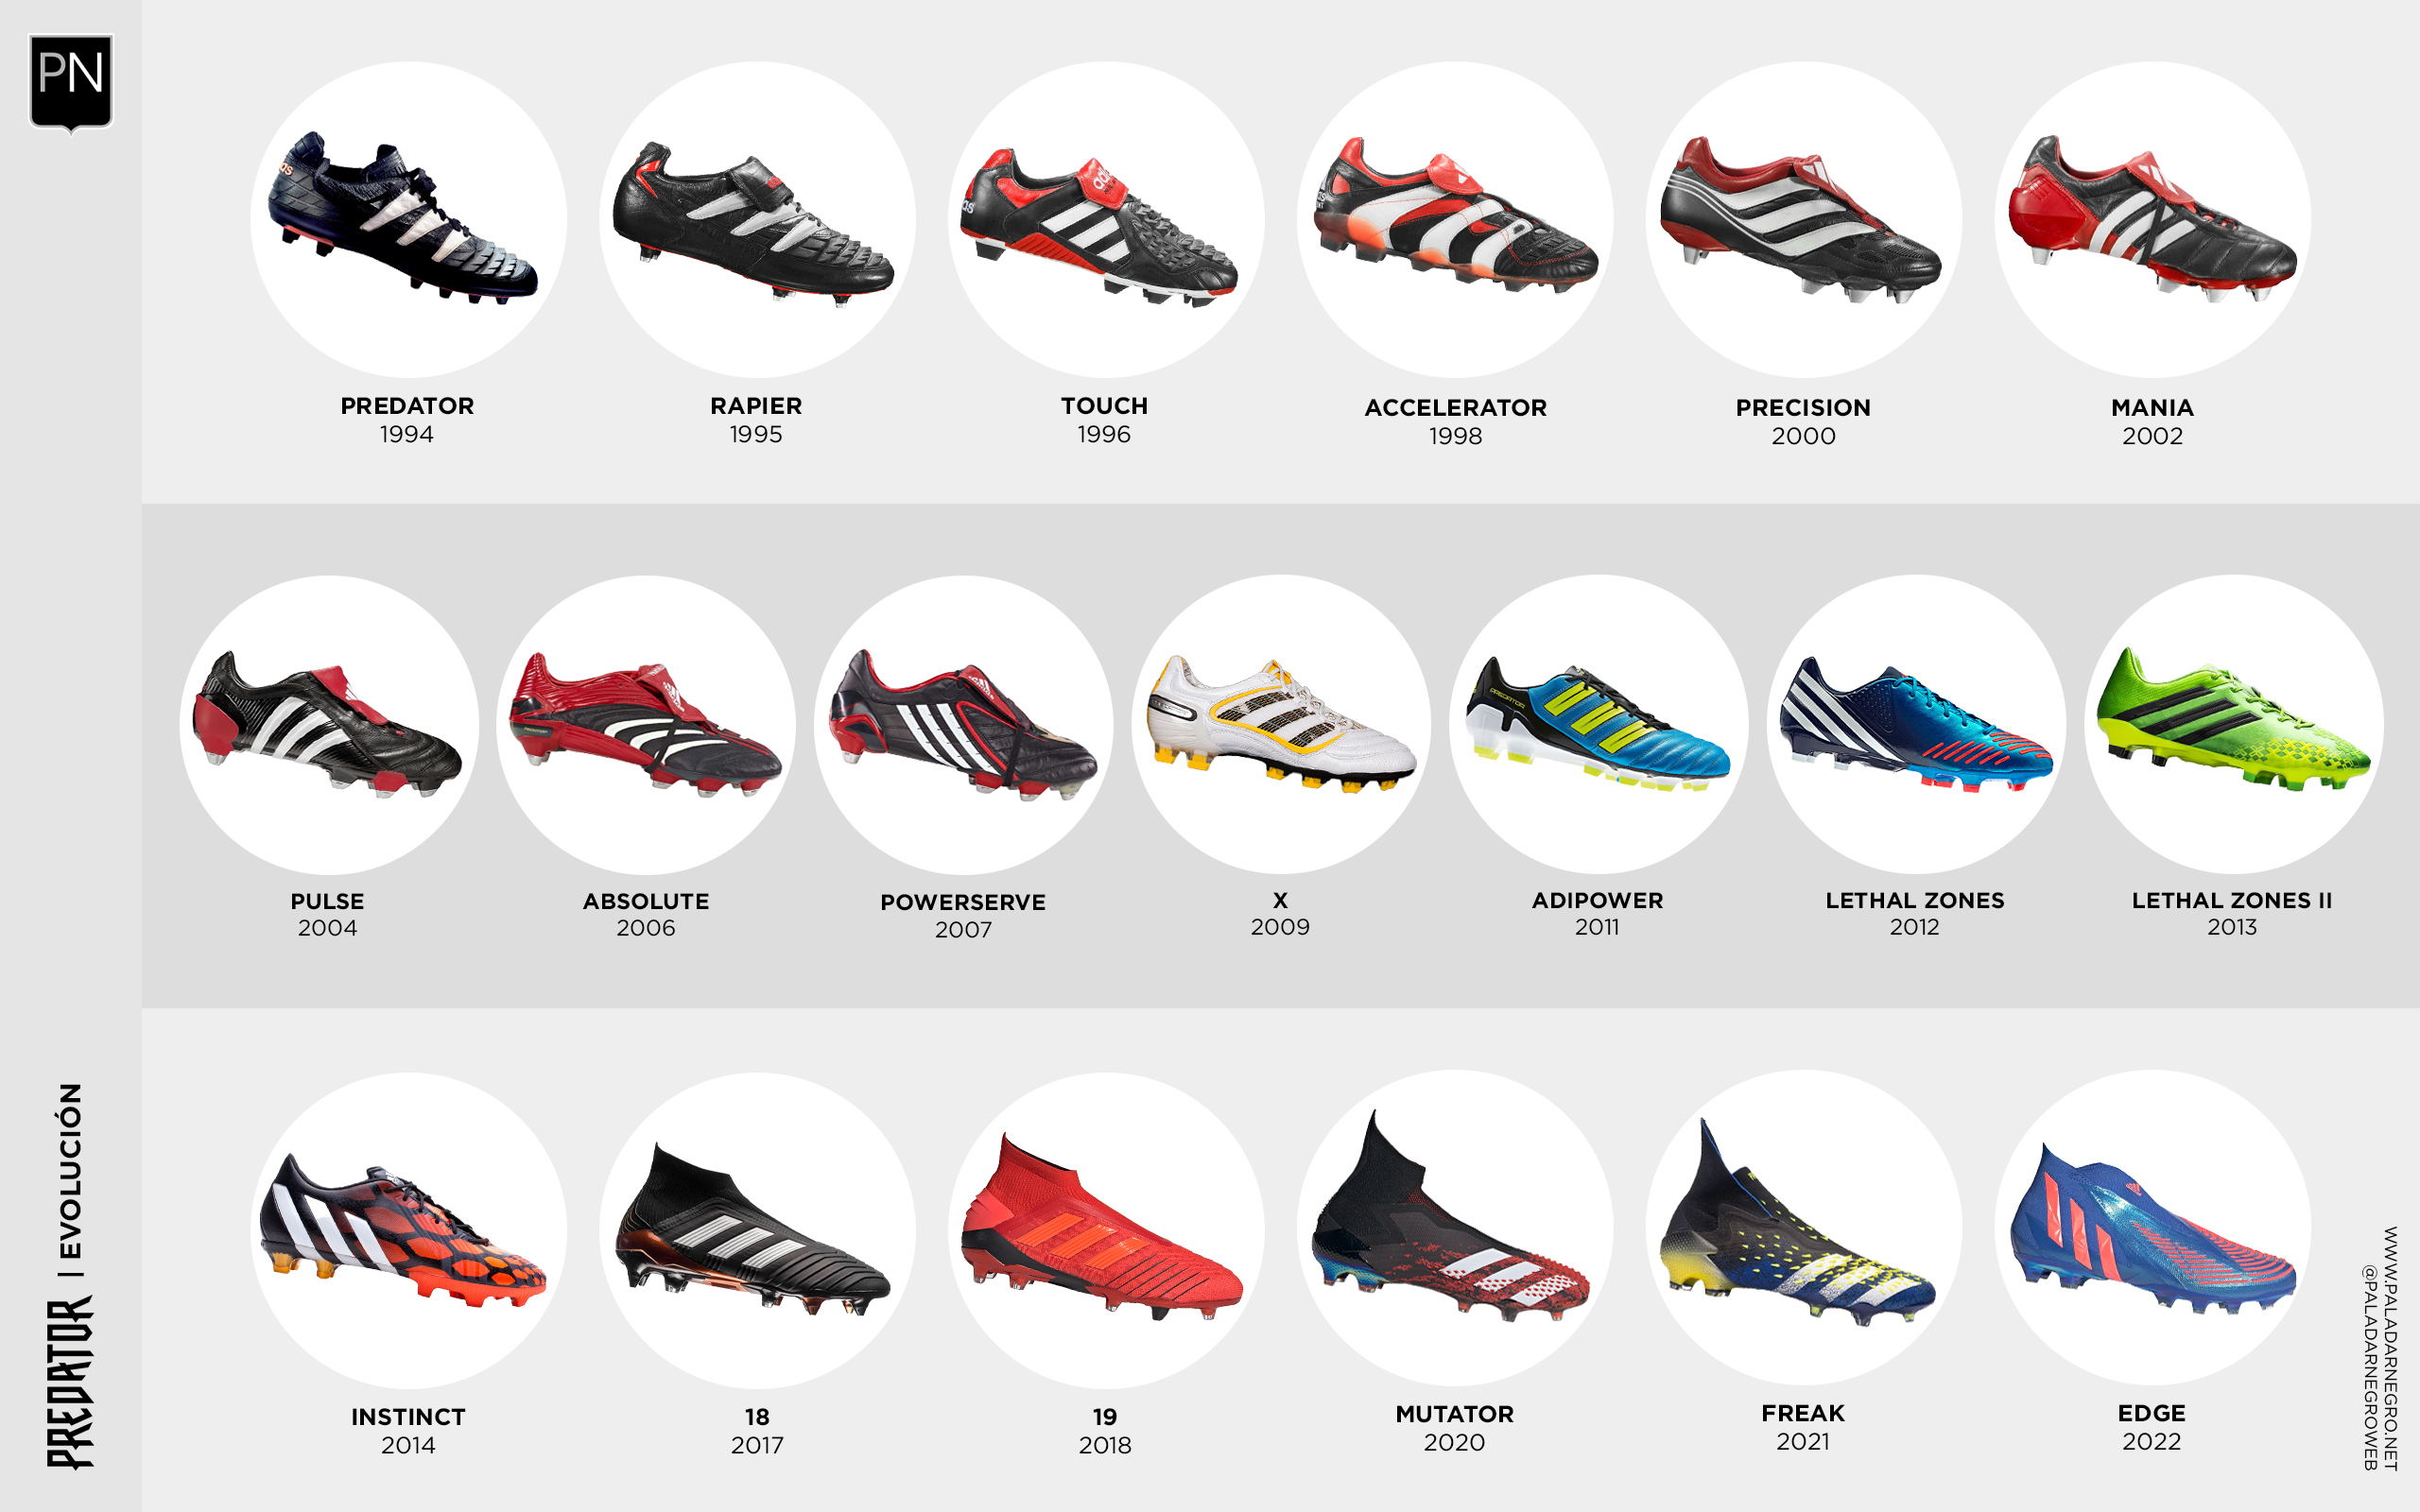 Paladar Negro on Twitter: "adidas Predator | La evolución de uno de los botines de fútbol icónicos ¿Cuál es tu modelo preferido? https://t.co/bxeBPaSOkt" / Twitter